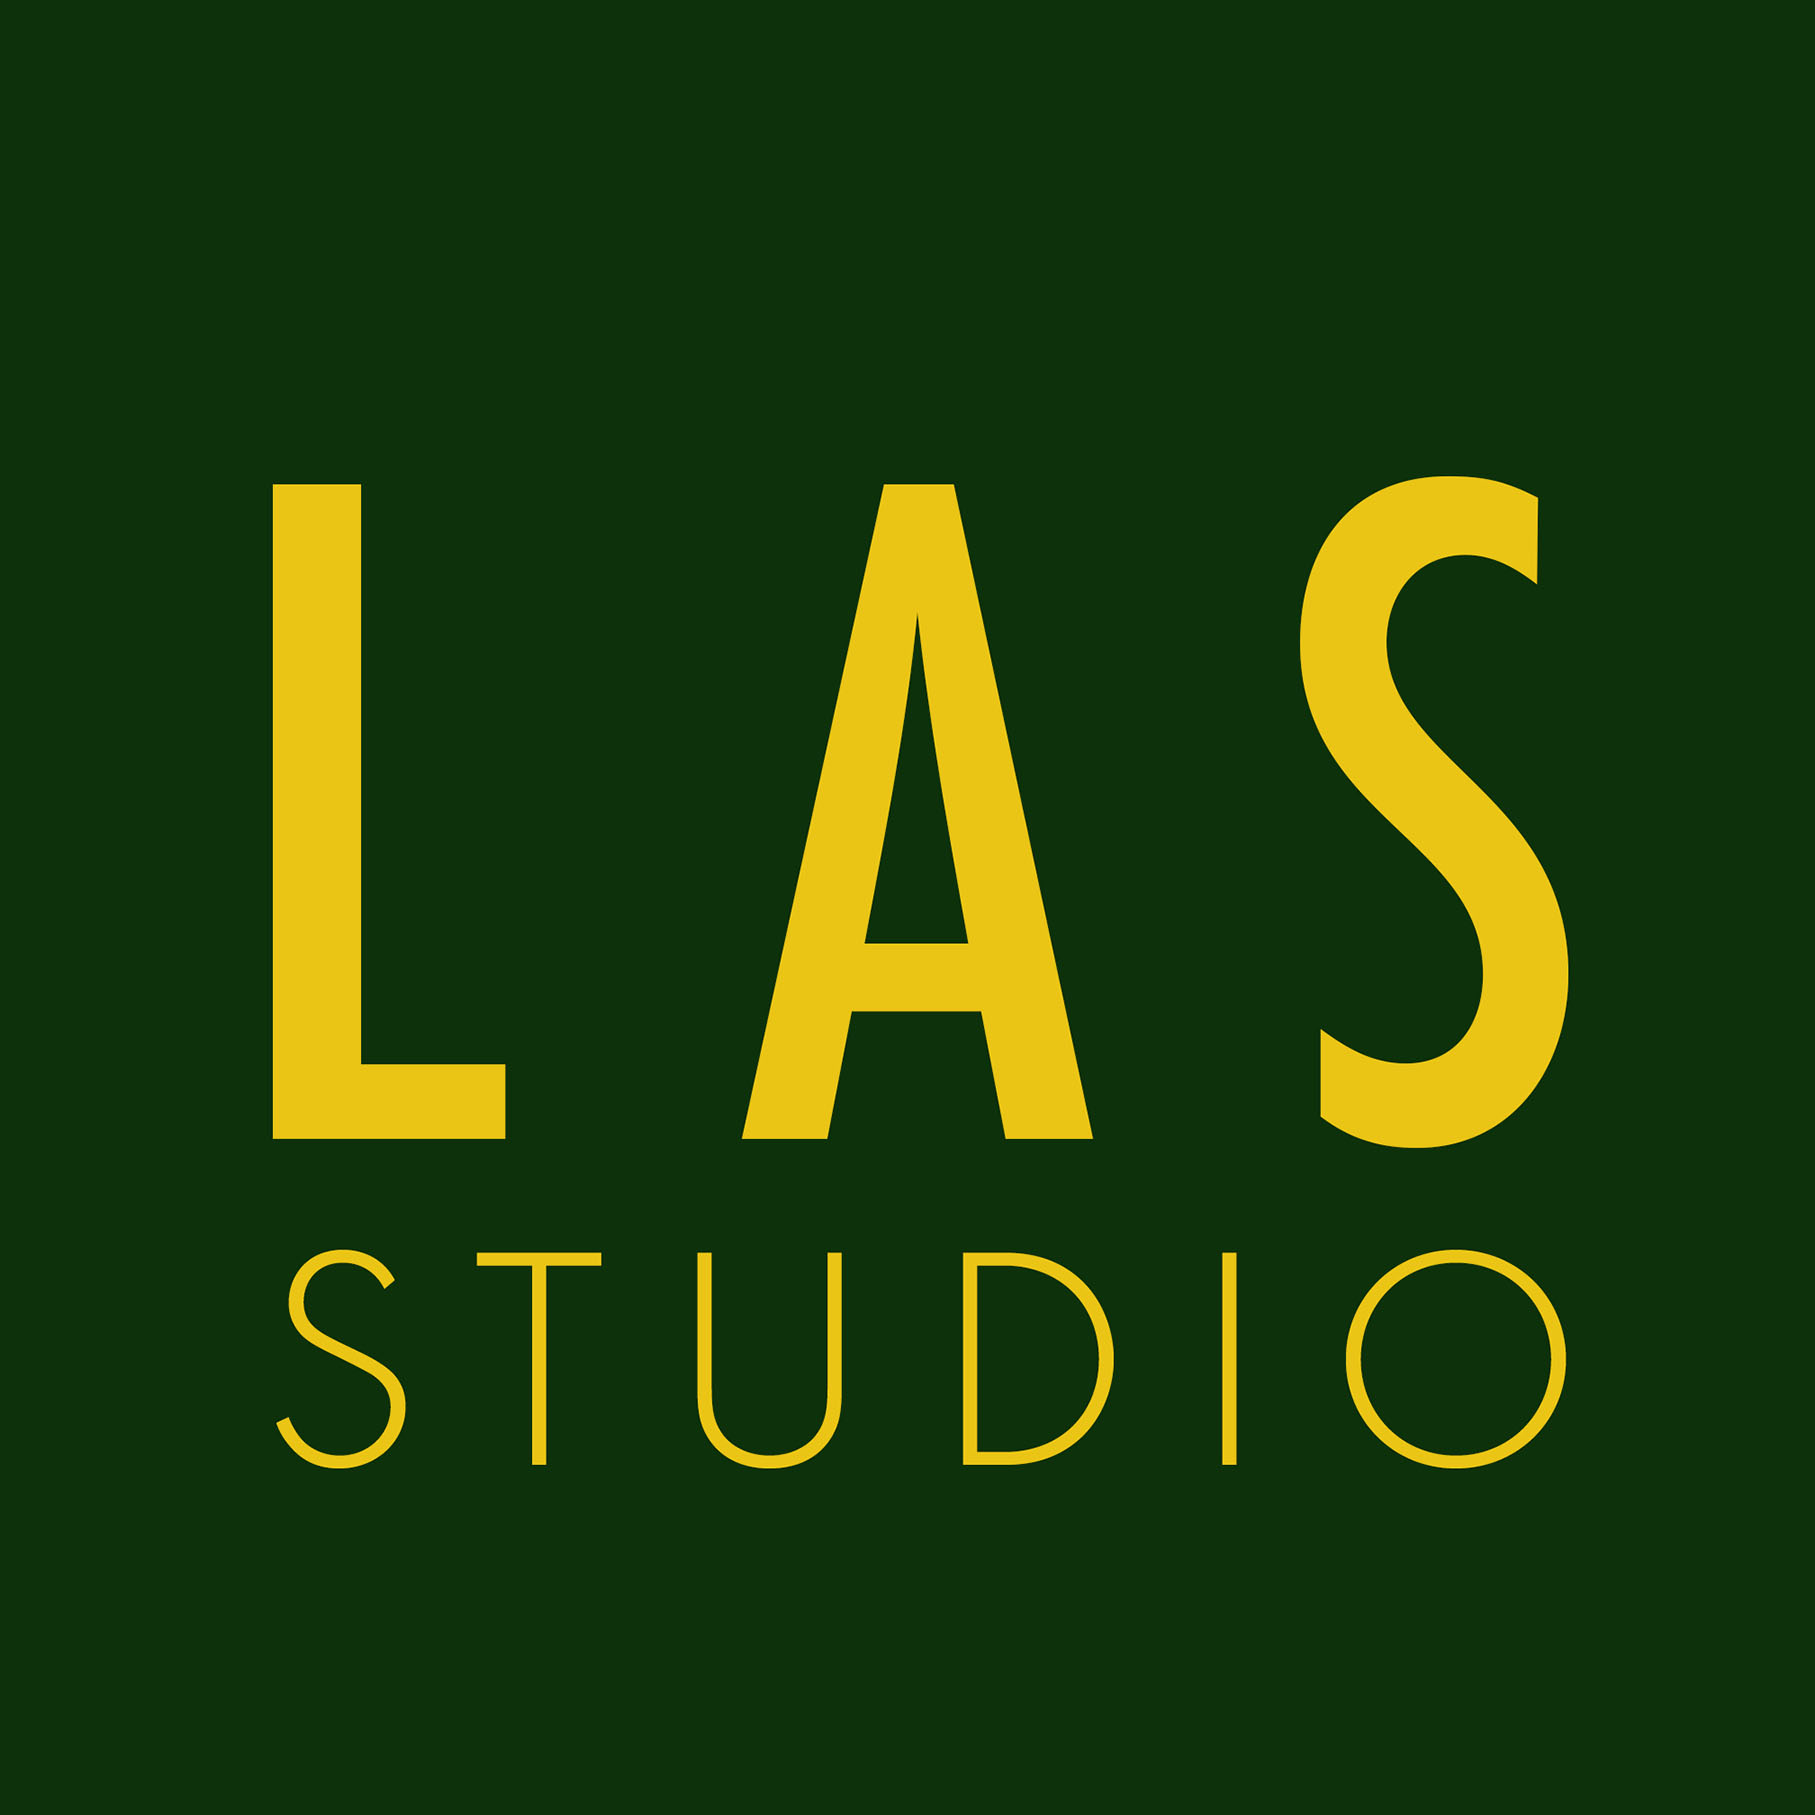 LAS Studio